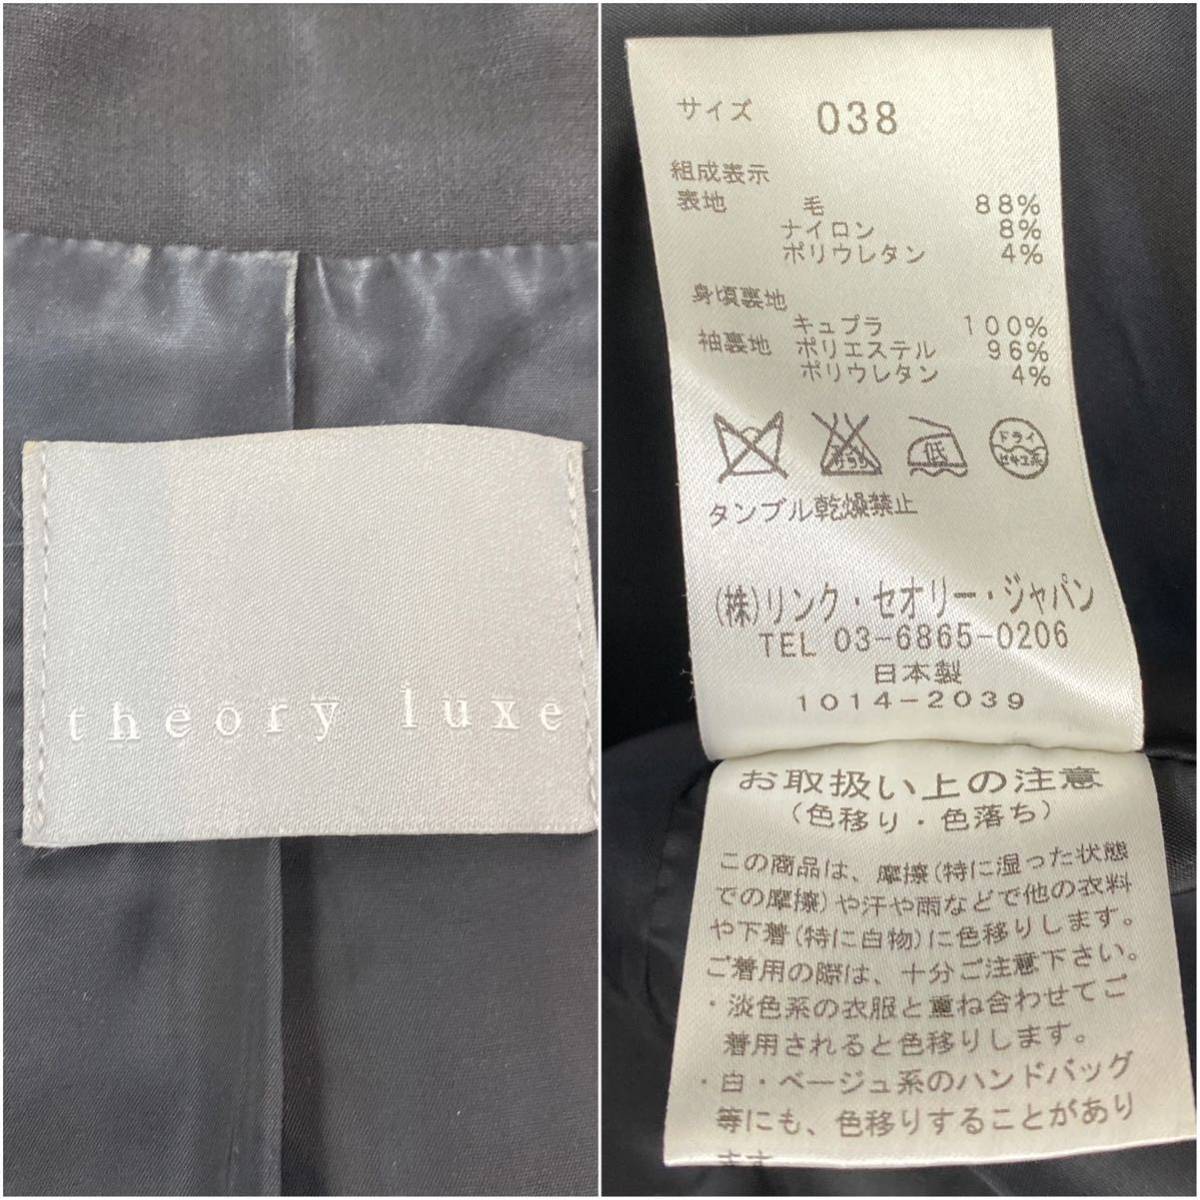 theory luxe セオリーリュクス ジャケット パンツ スカート 3点セット 黒 ブラック スーツ size38_画像10